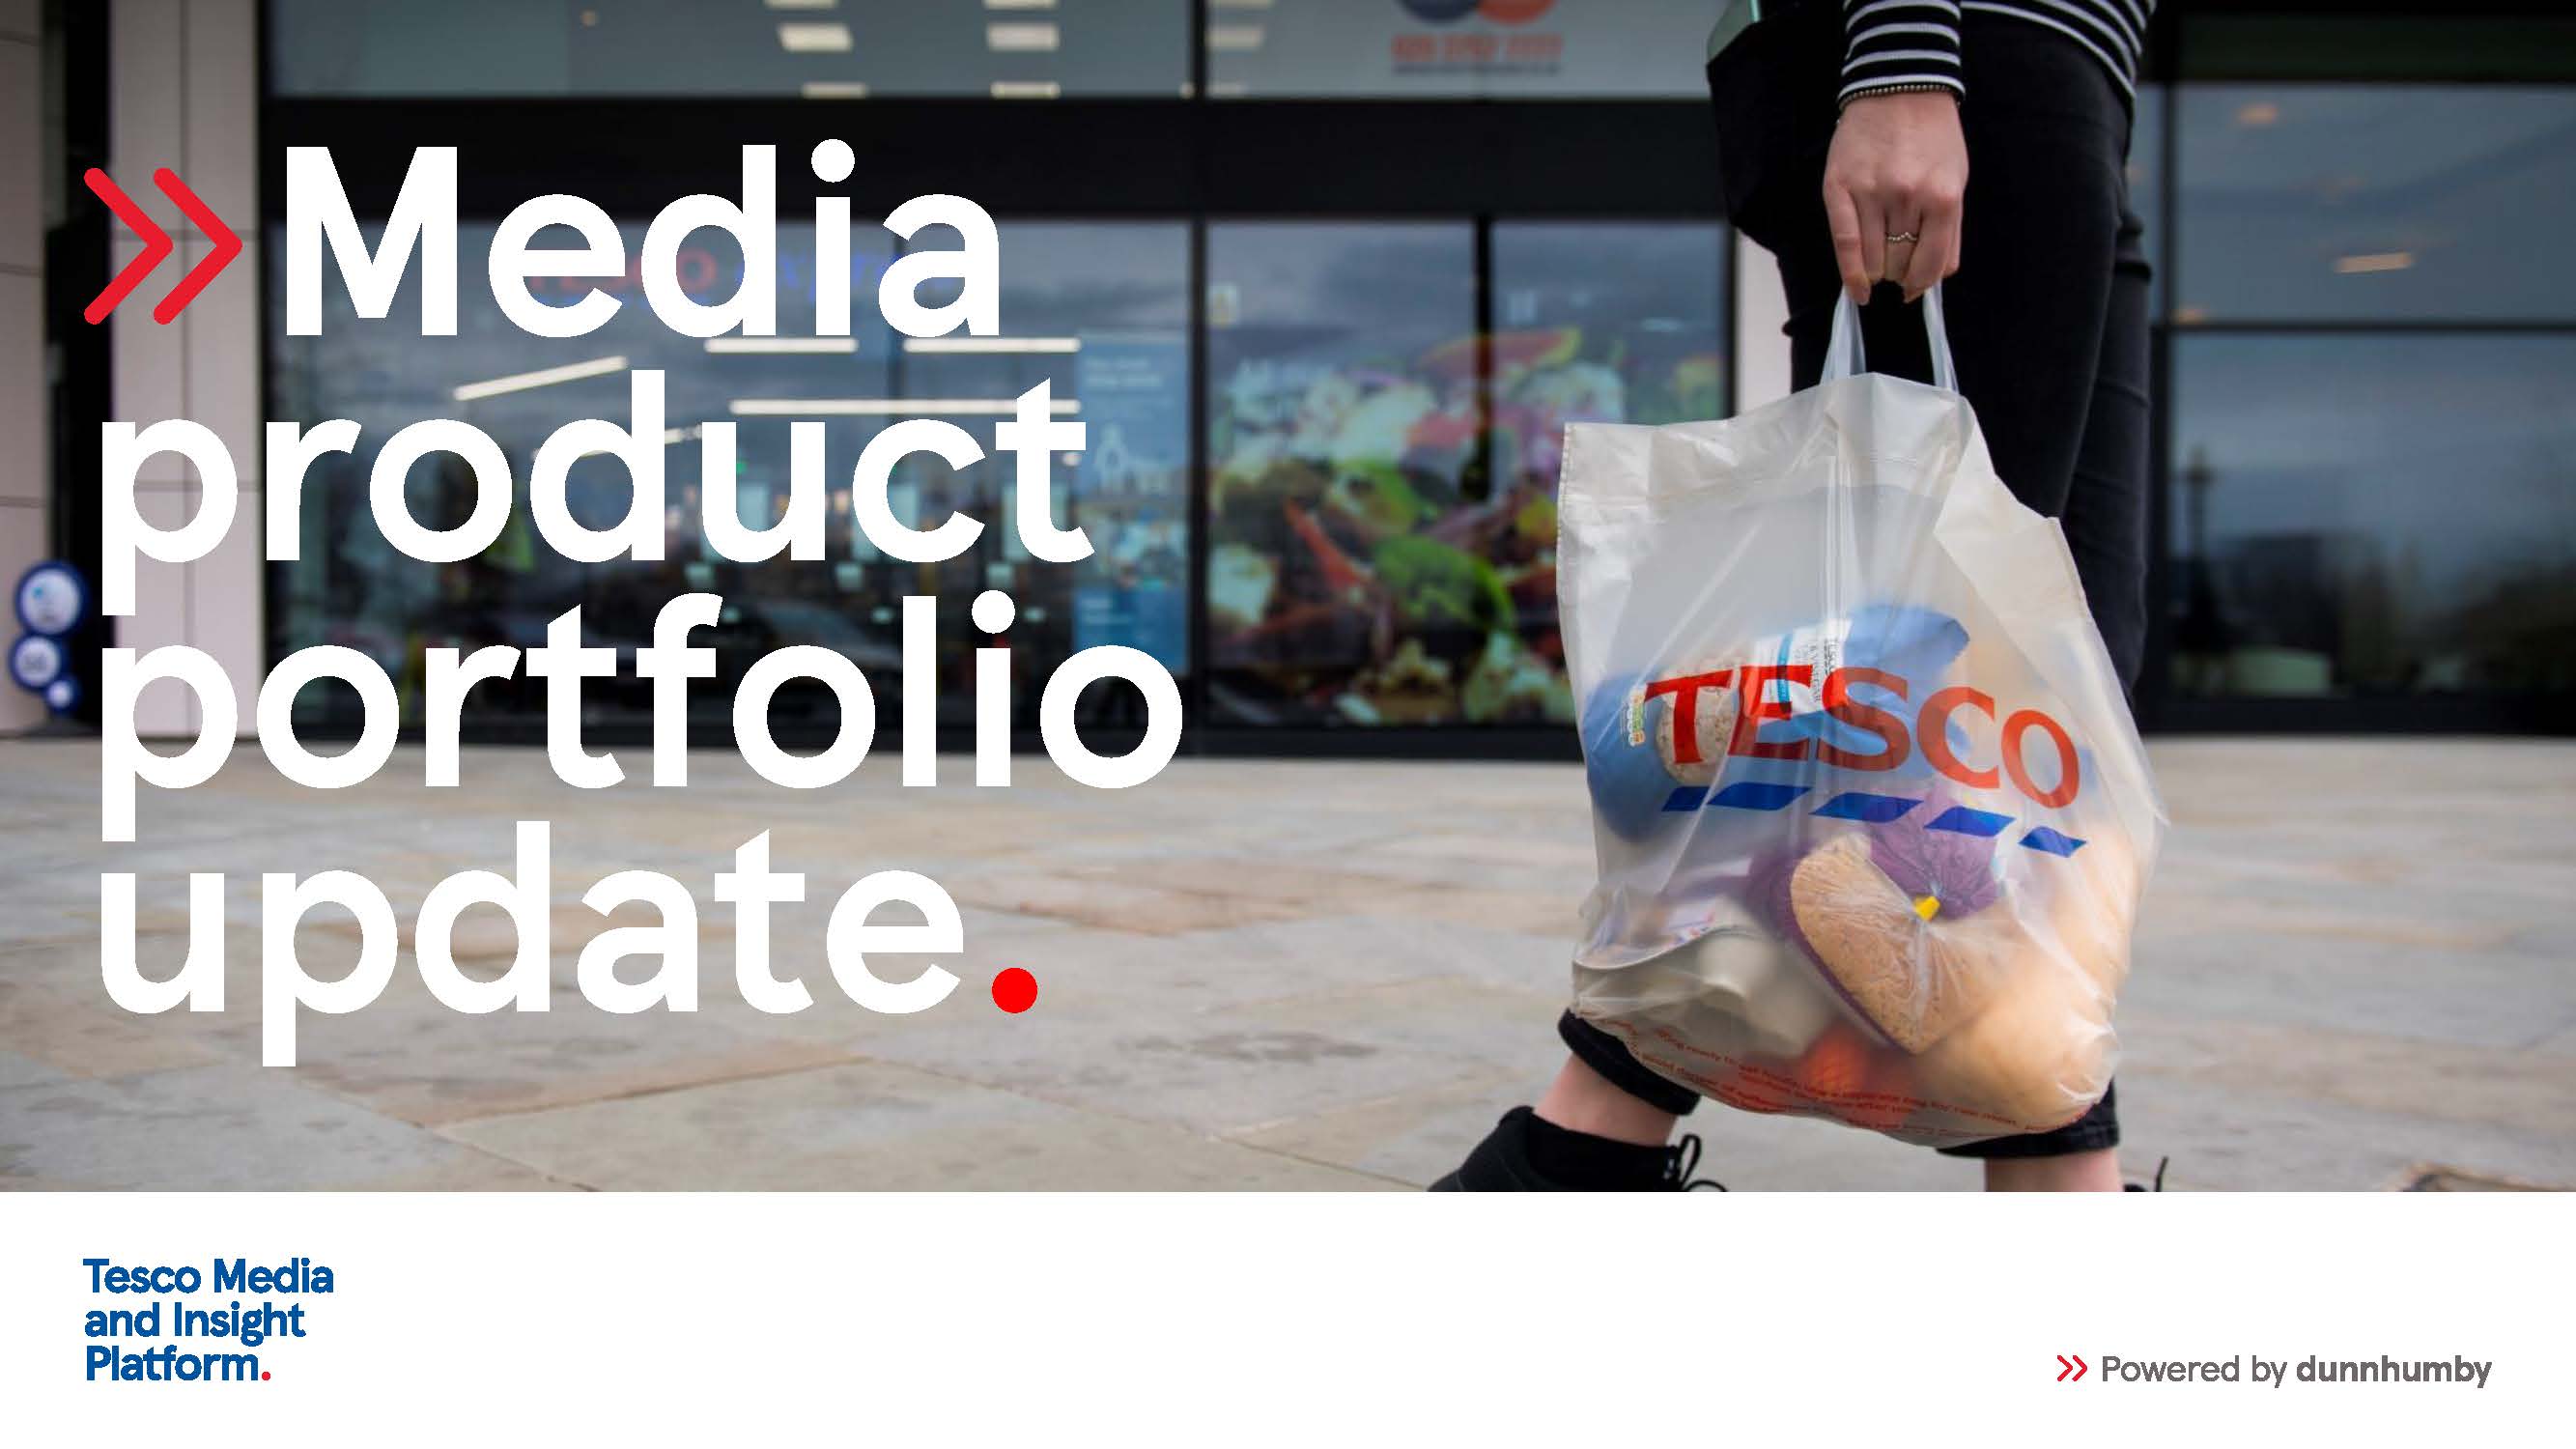 Media product portfolio update